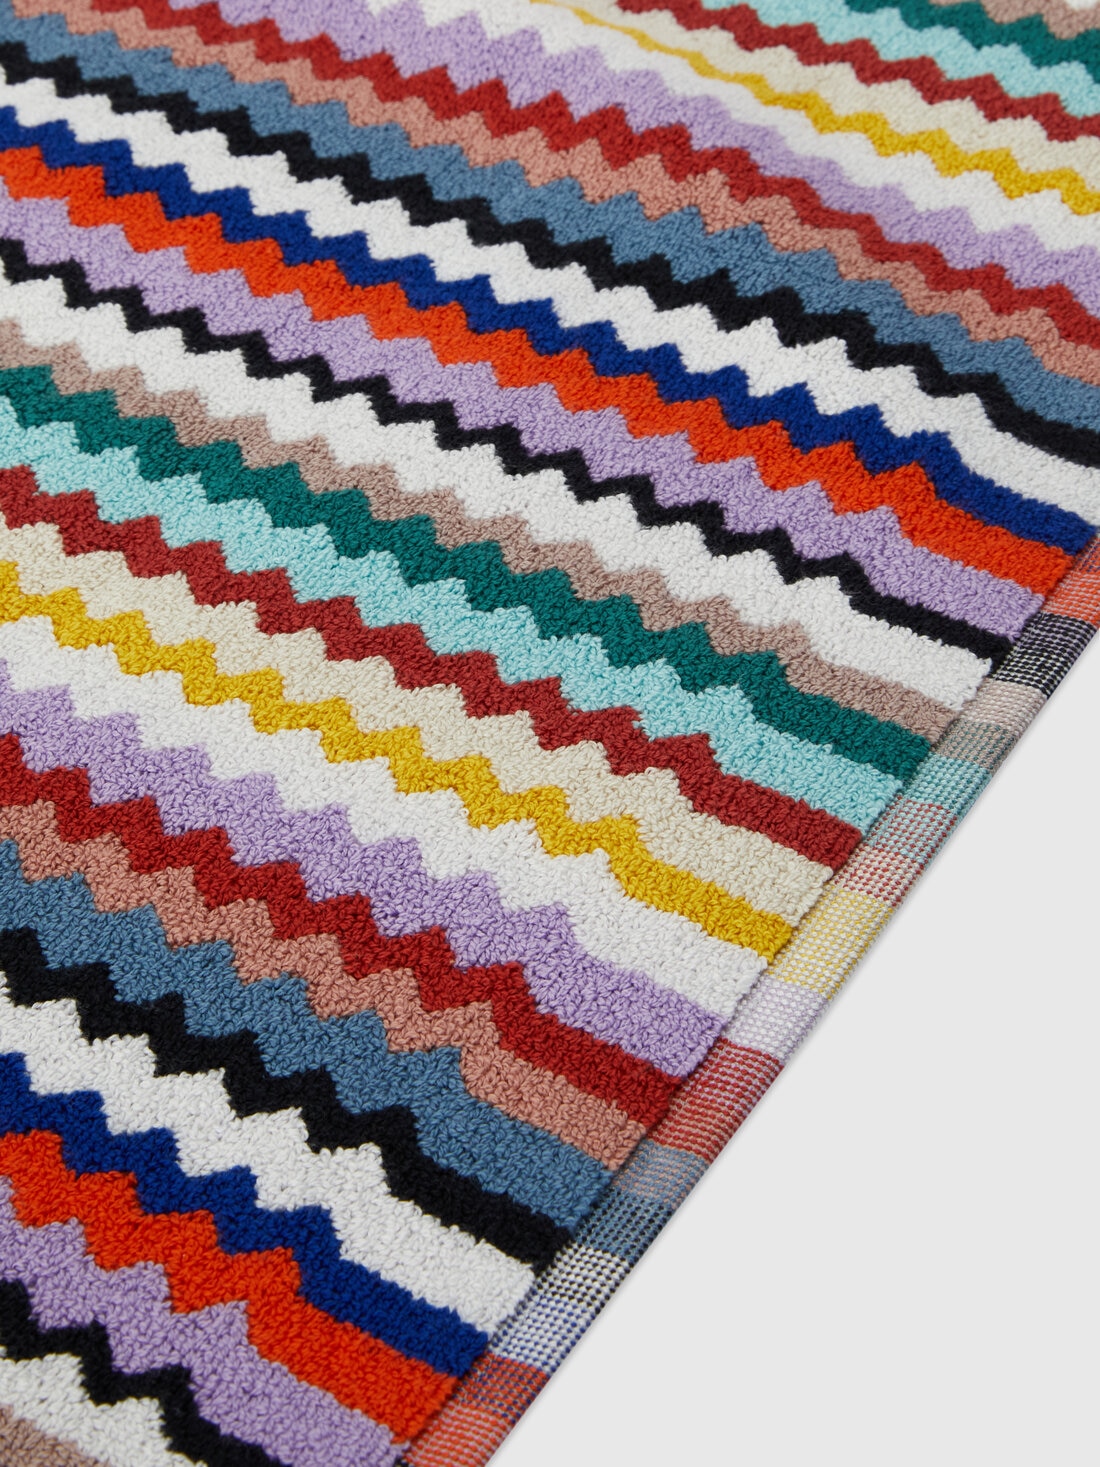 Riverbero 60x90 cm cotton zigzag bath mat, Multicoloured  - 8053147143163 - 1